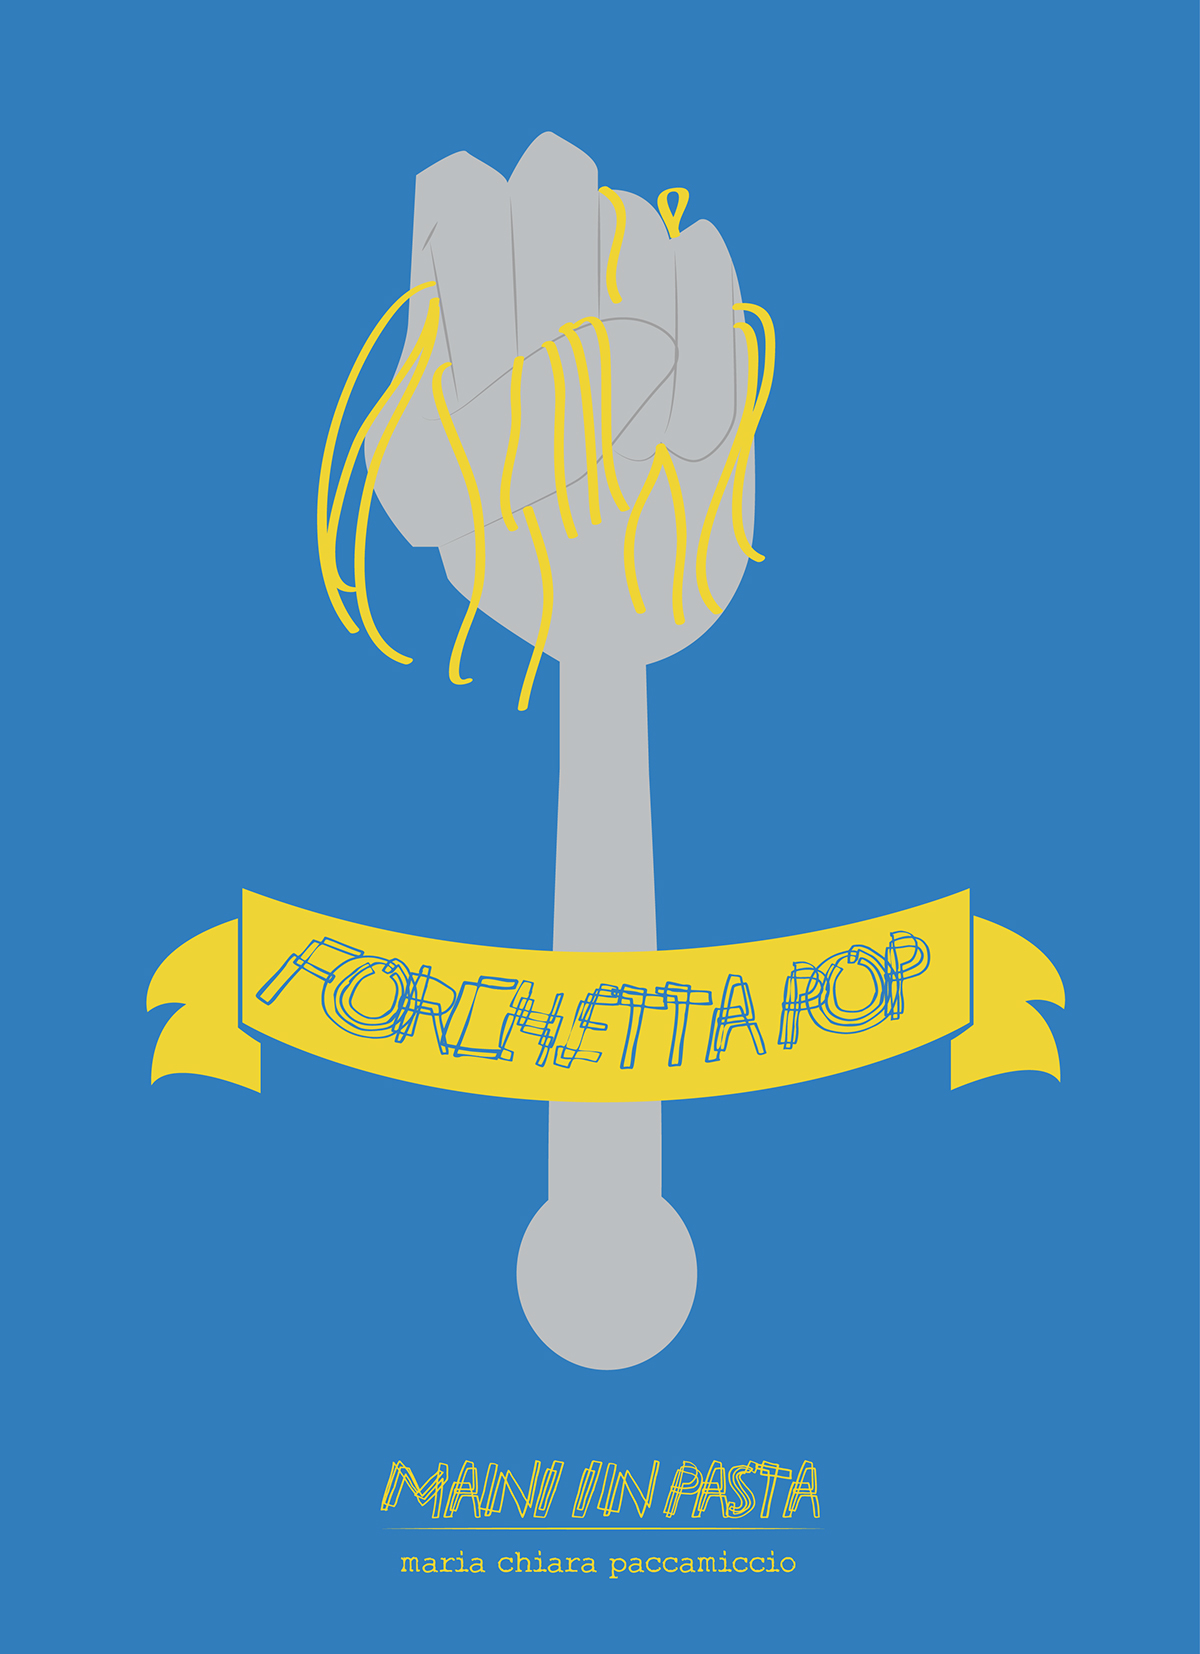 lisboa CONCORSO mip maniinpasta forchettapop chefrubio illustrazione mano spaghetti Pasta